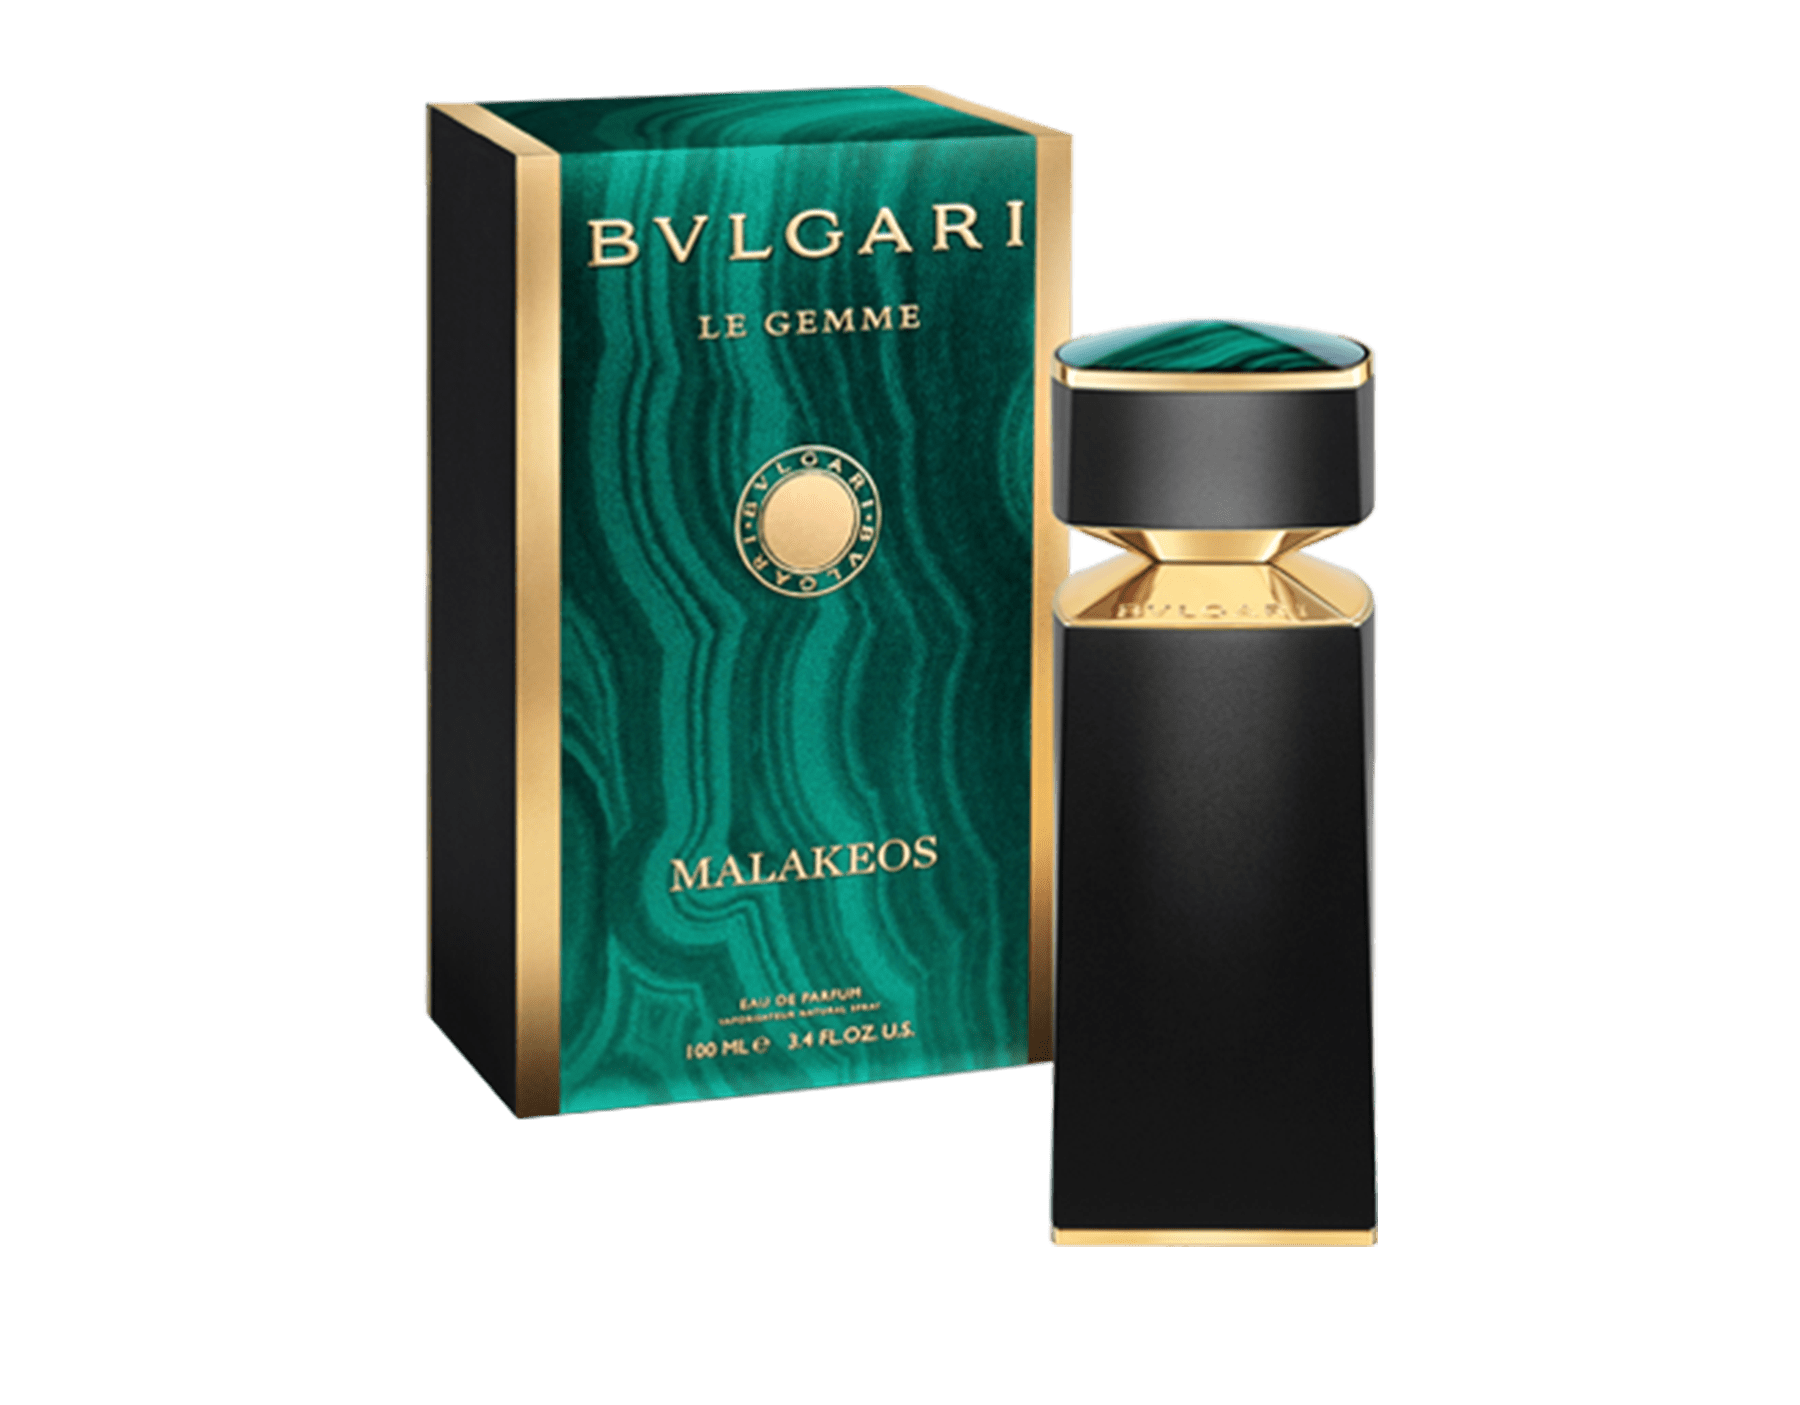 Le Gemme MALAKEOS Eau de Parfum 3.4 oz 